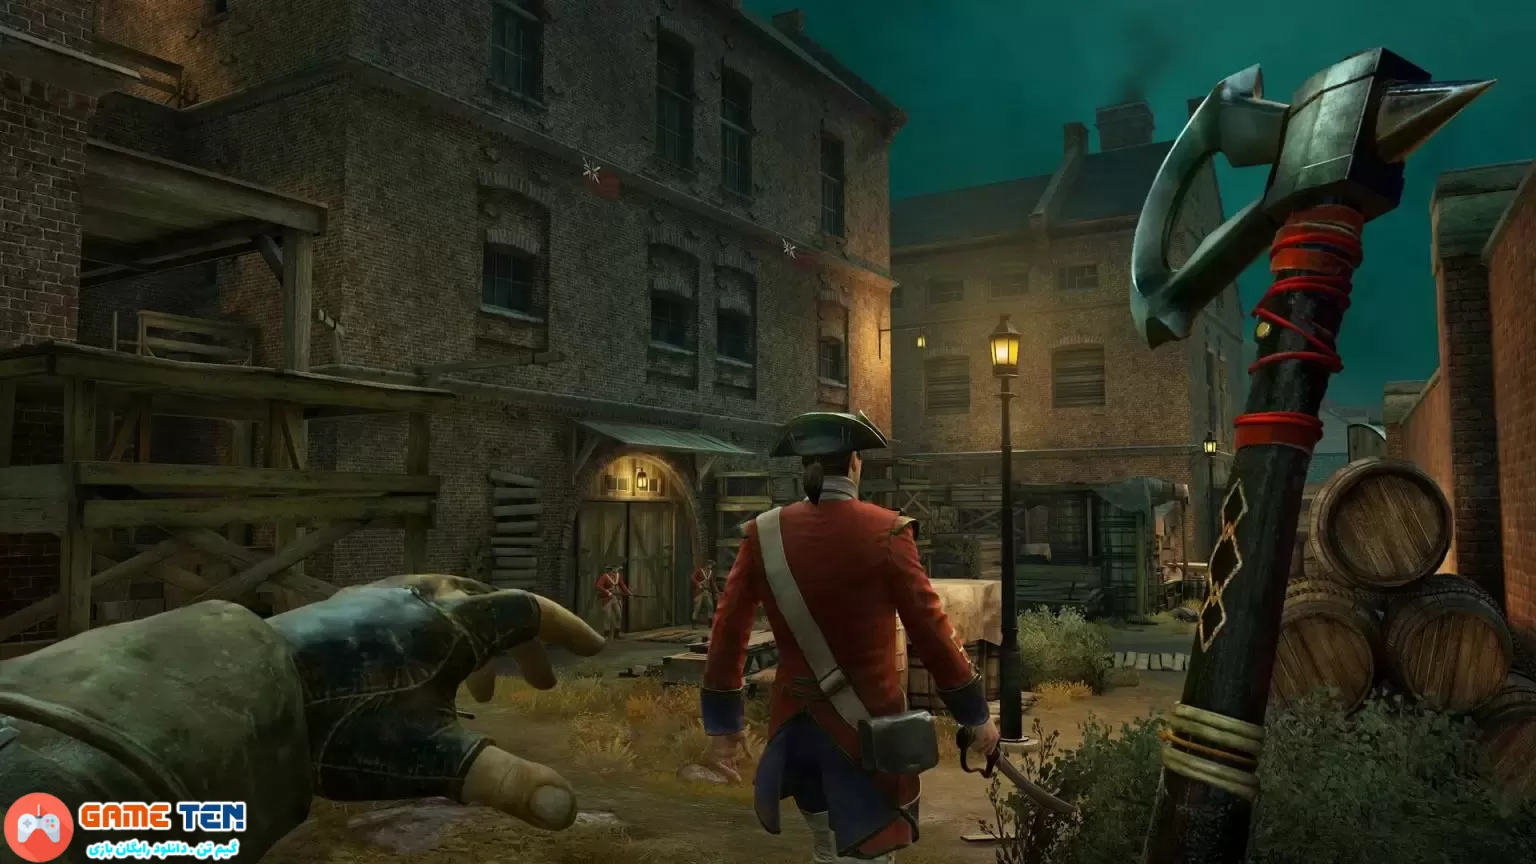 فروش Assassin's Creed Nexus VR کمتر از حد انتظار بود